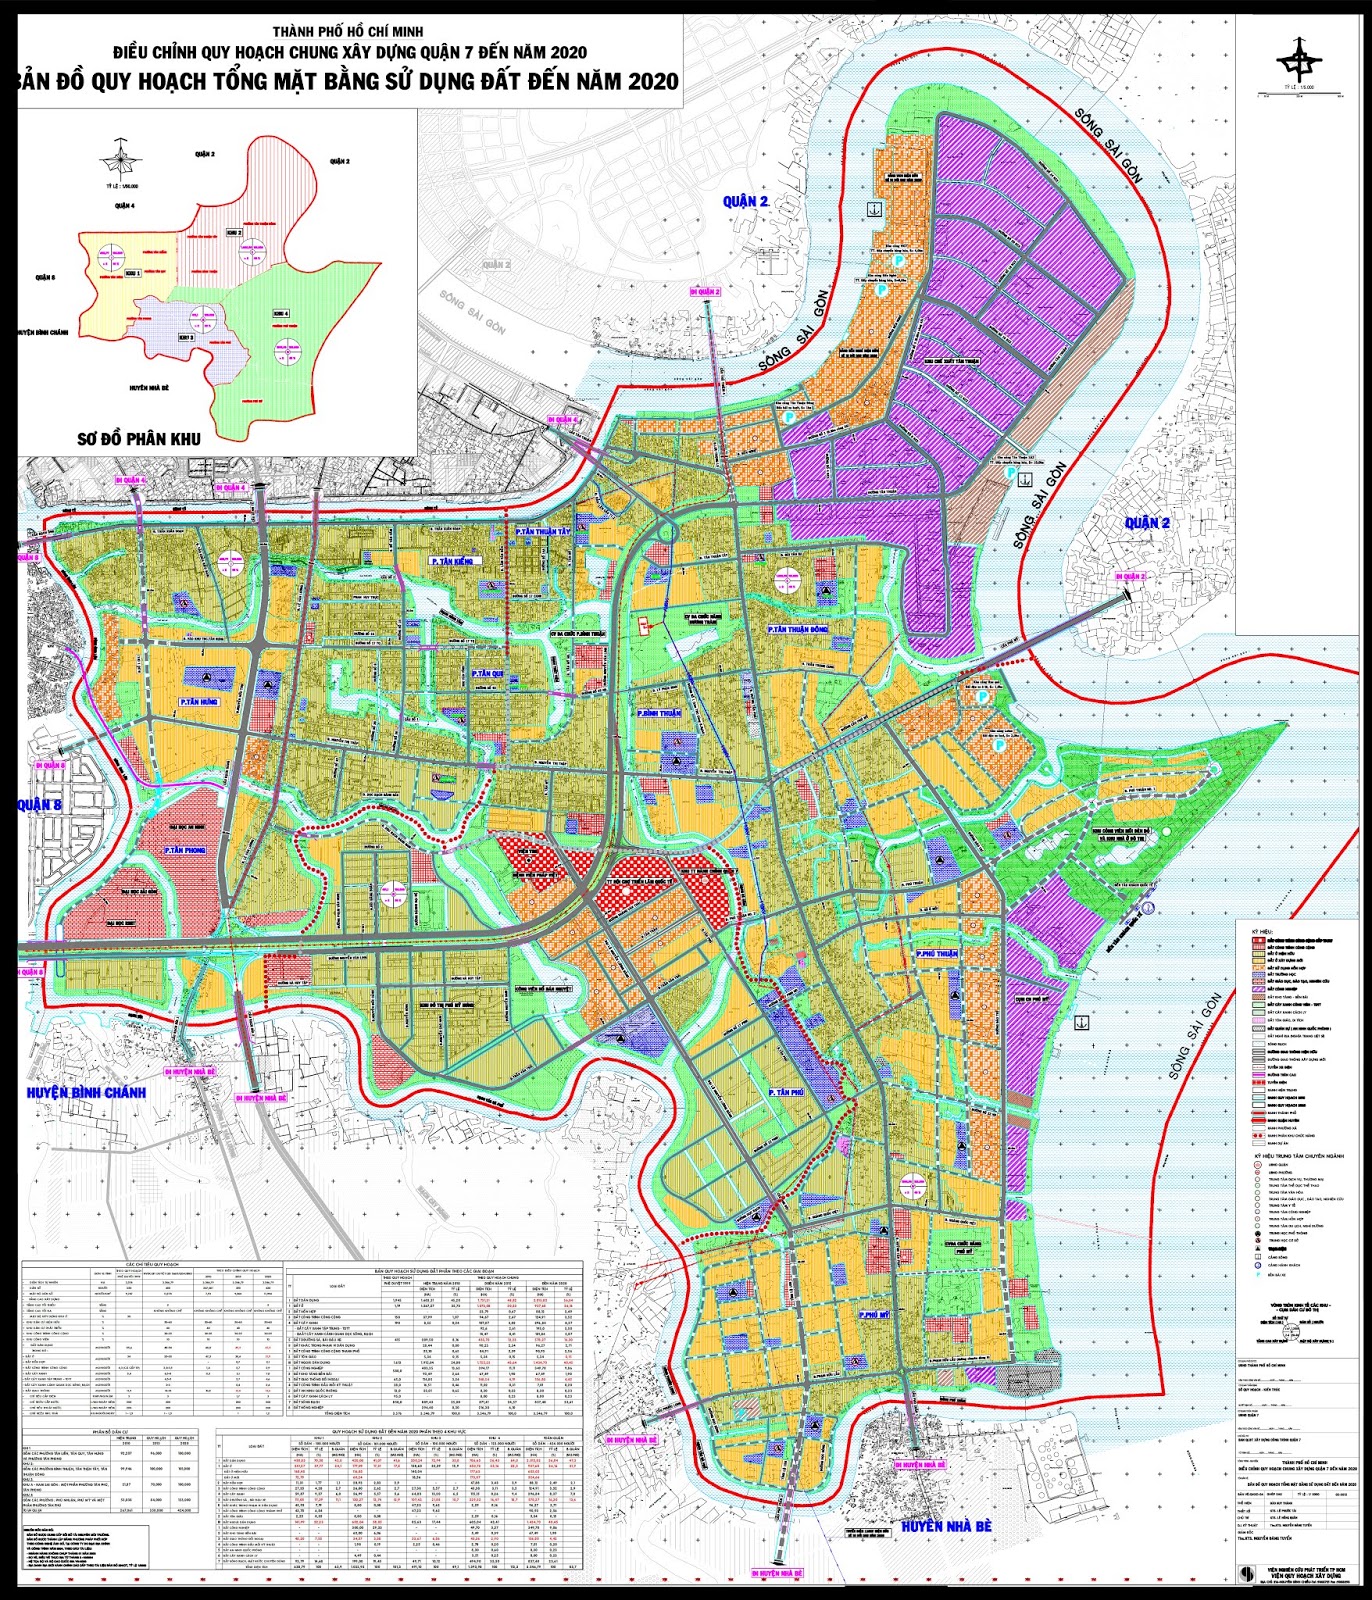 Bộ sưu tập bản đồ quy hoạch quận 7 Đầy đủ và chính xác